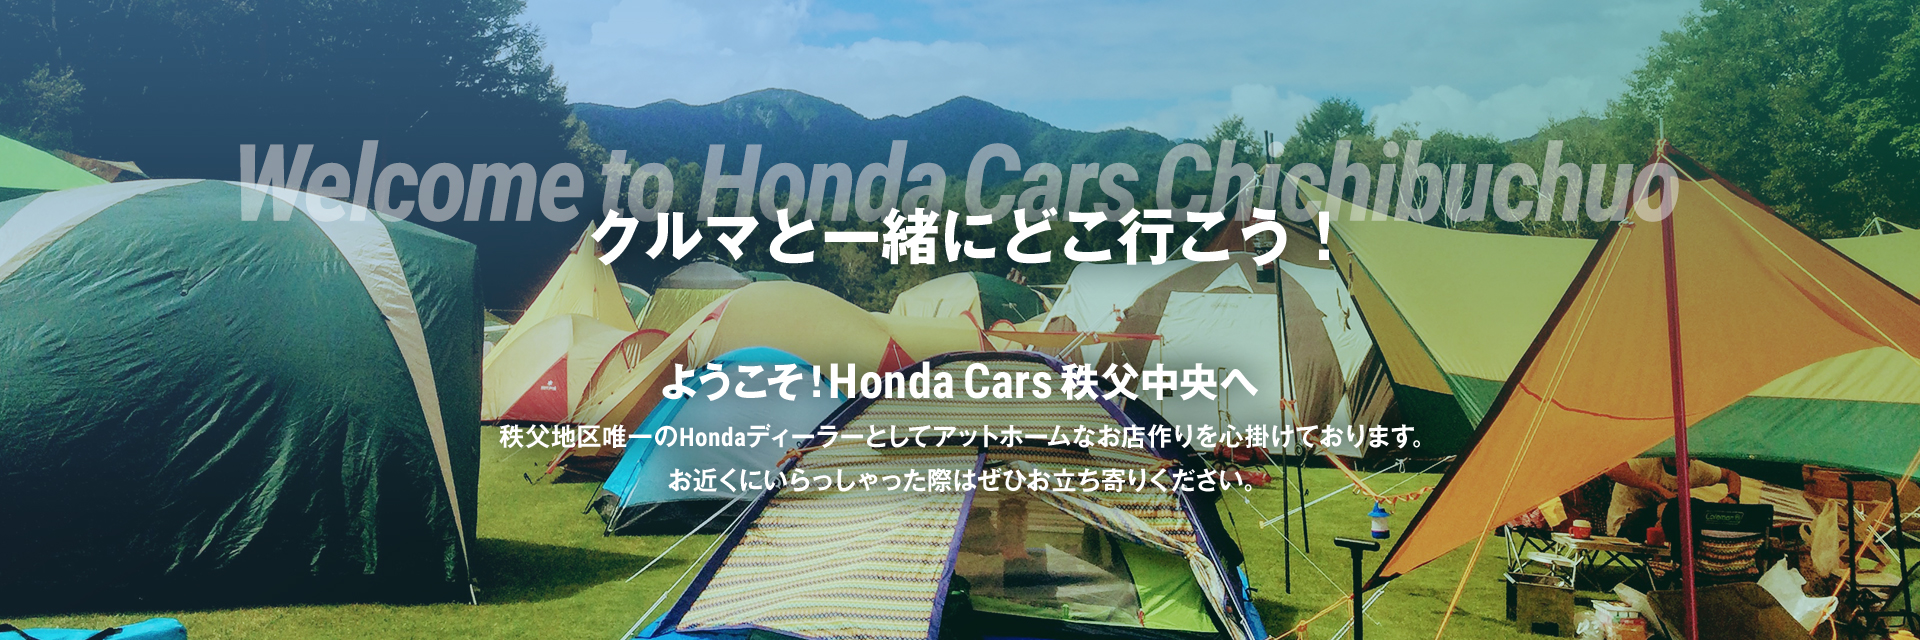 Honda Cars 秩父中央 埼玉県のhondaディーラー